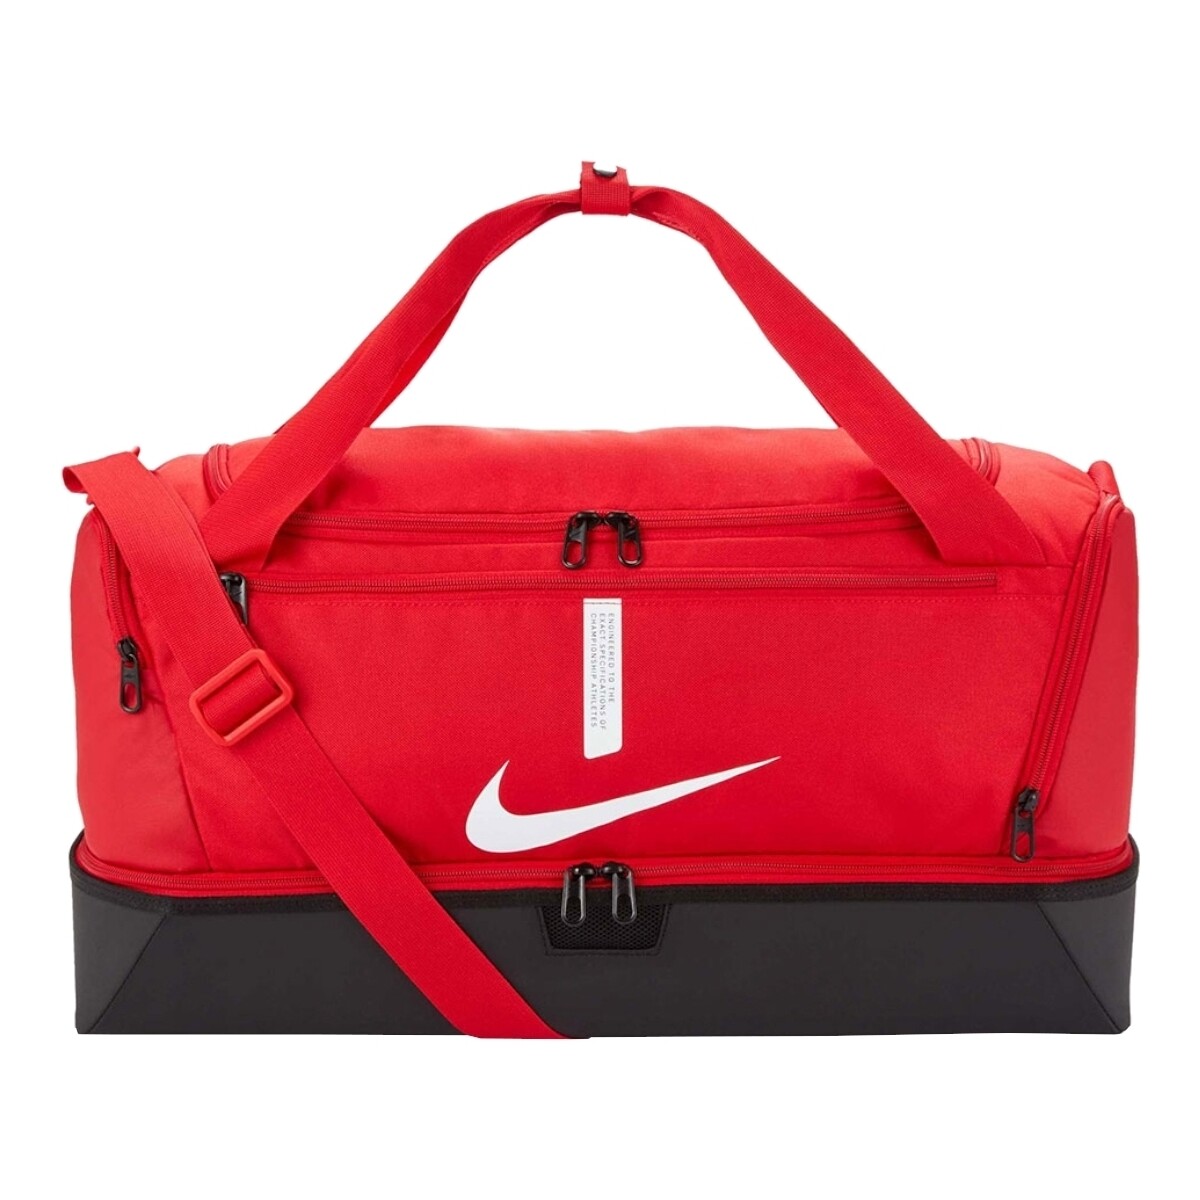 Väskor Sportväskor Nike Academy Team M Röd